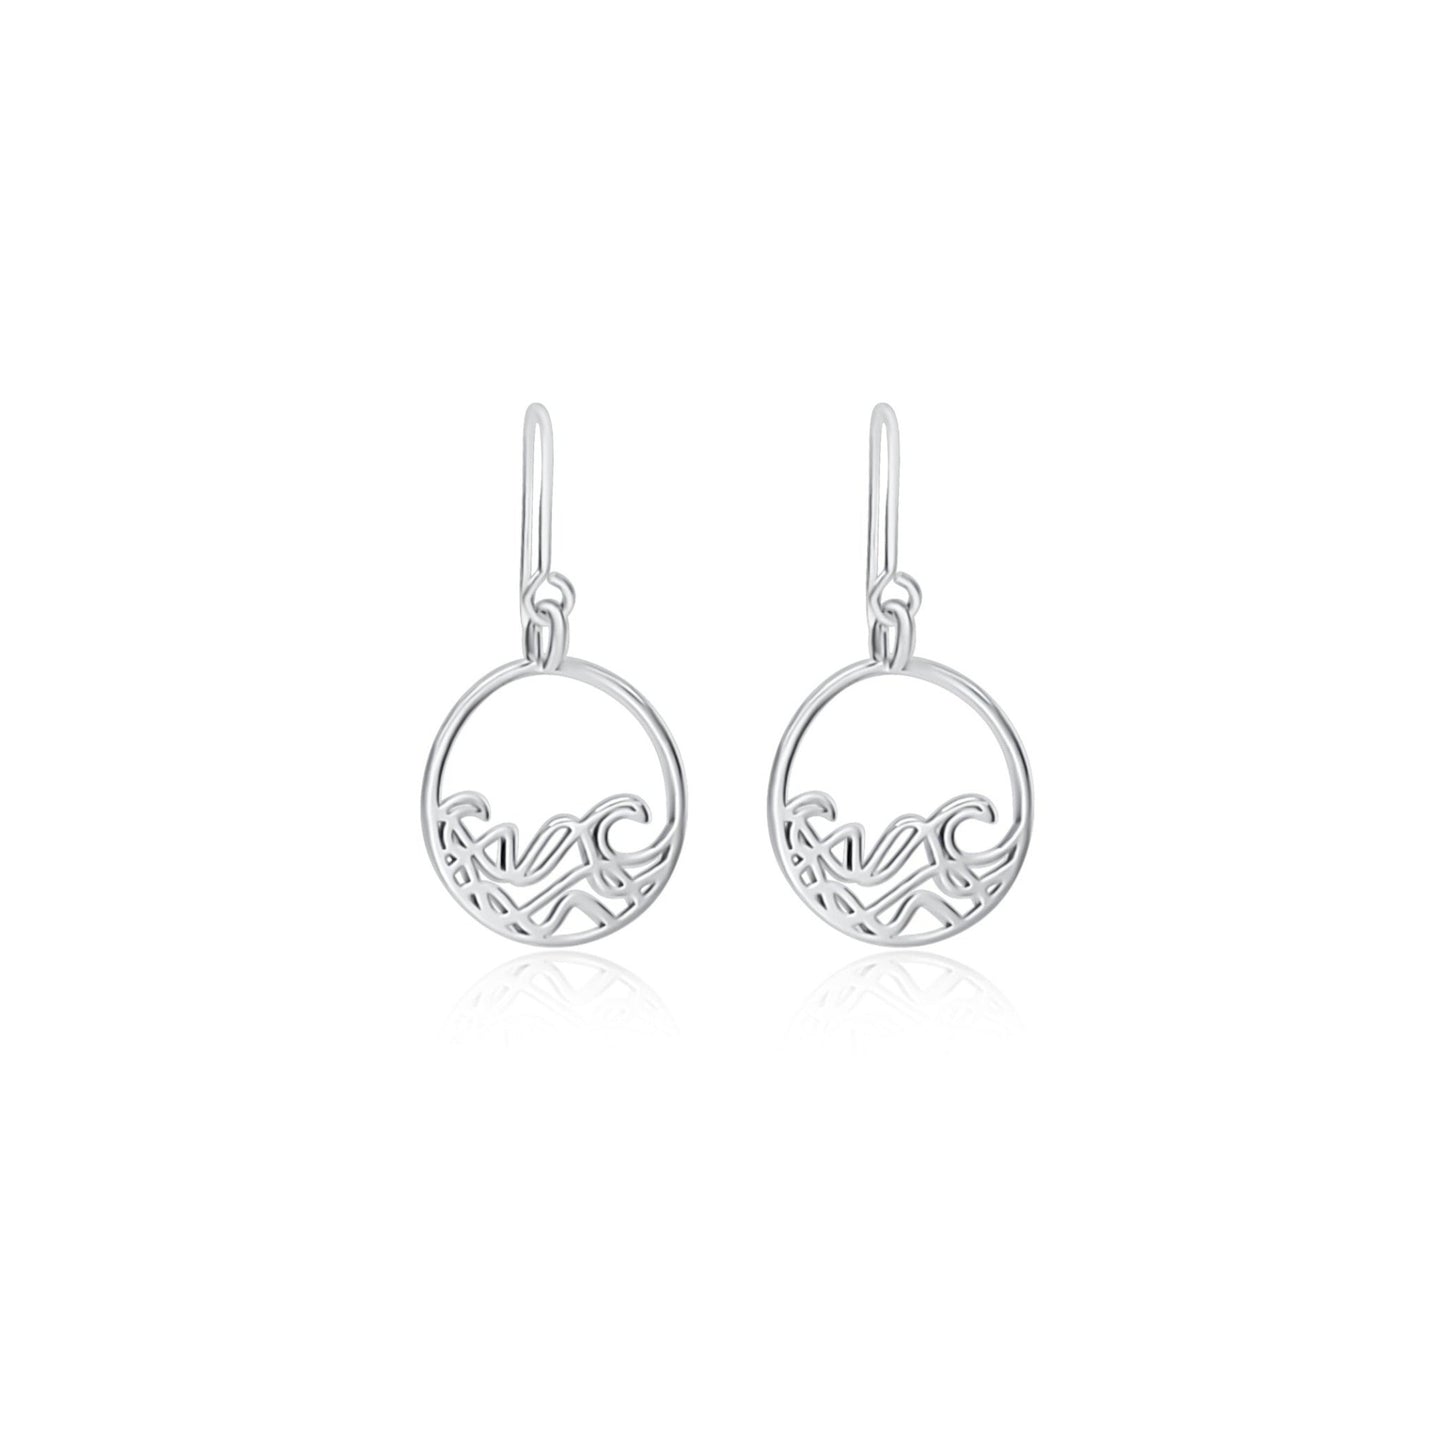 sterling silver ocean surf wave circle earrings on shepherds hooks